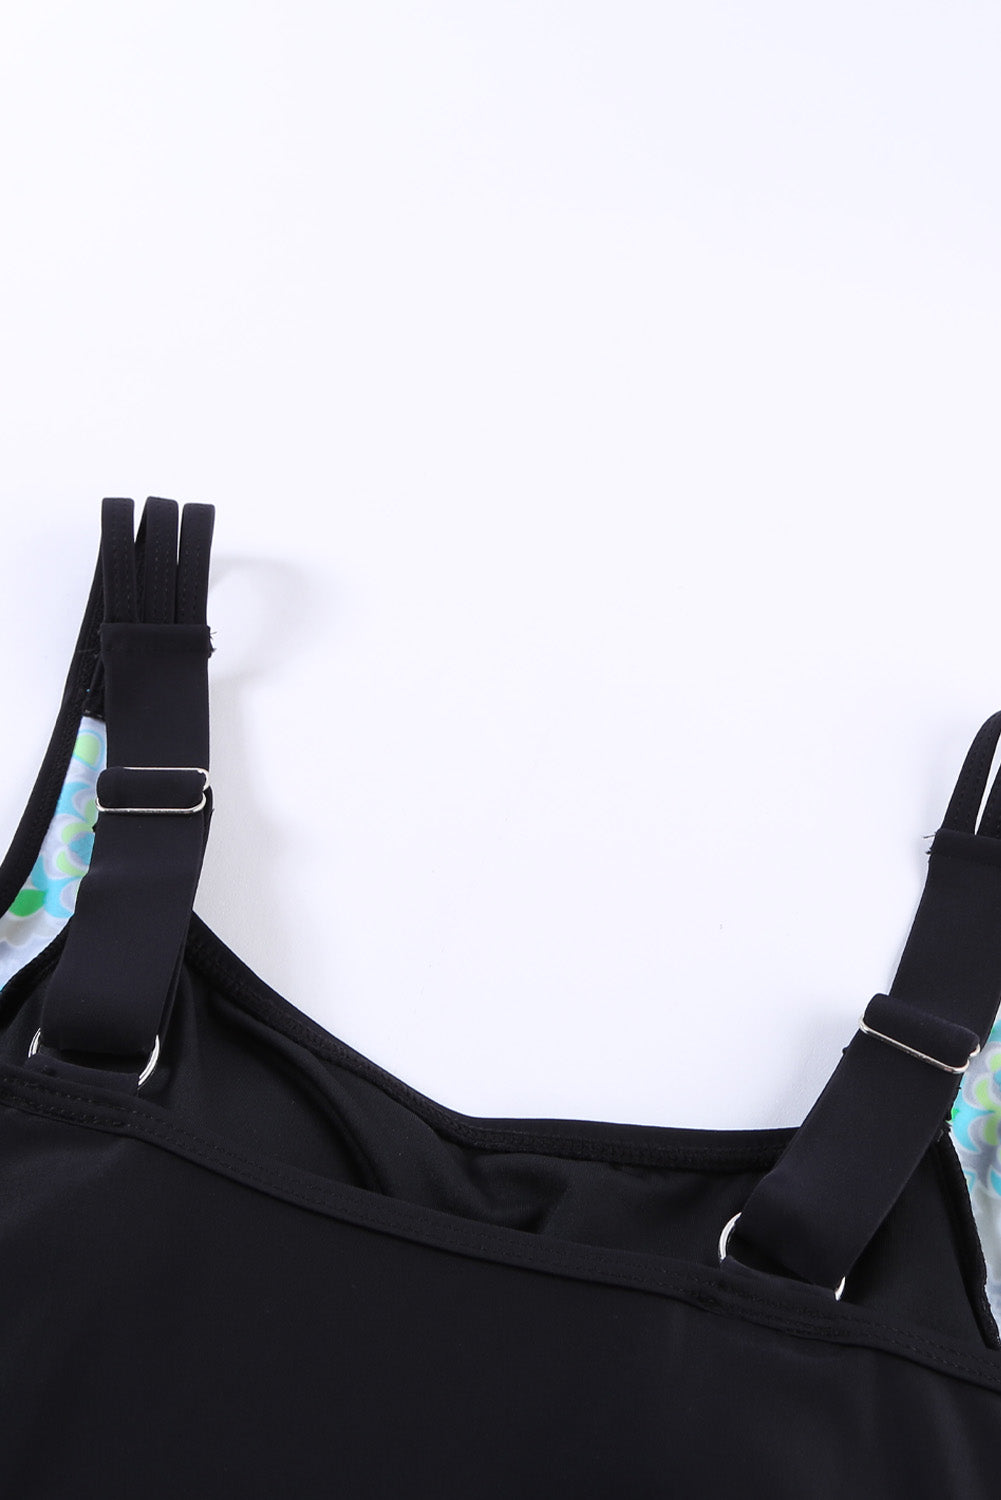 Crna jednodijelna kupaća haljina s naborima za kontrolu trbuščića s cvjetnim ukrasima